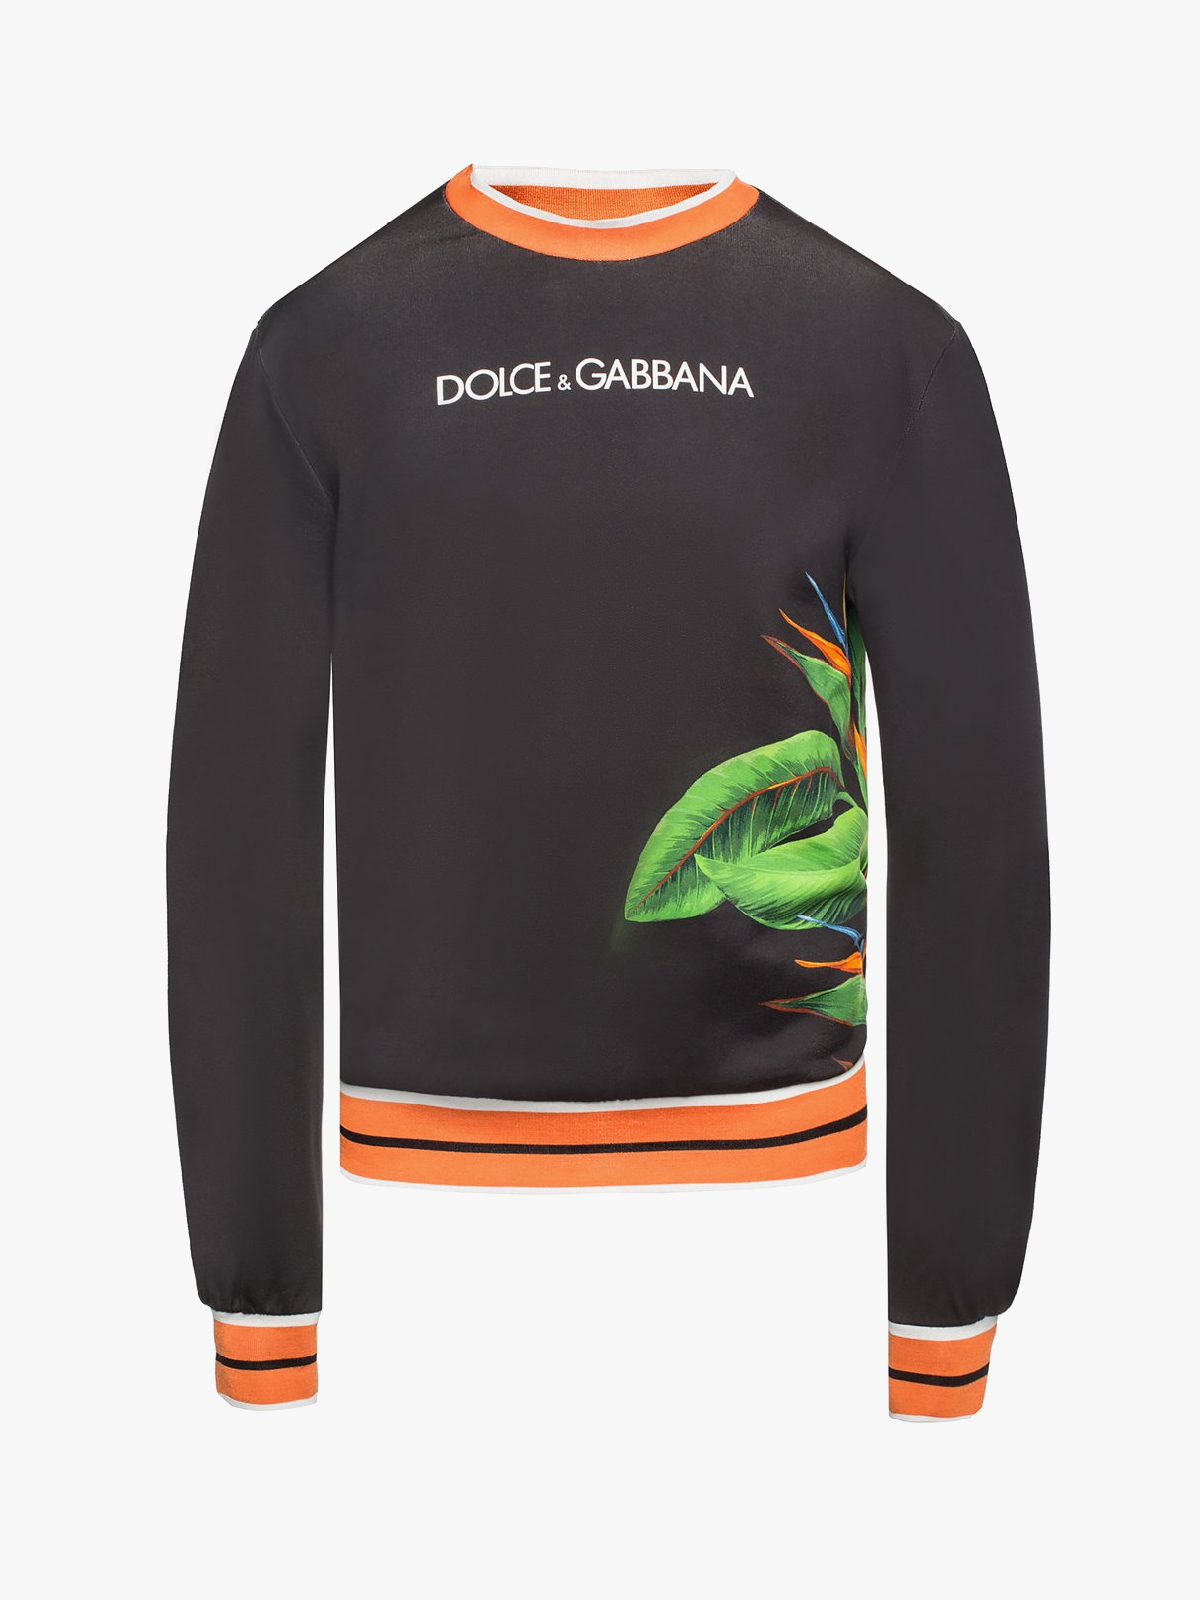 dolce gabbana king sweatshirt